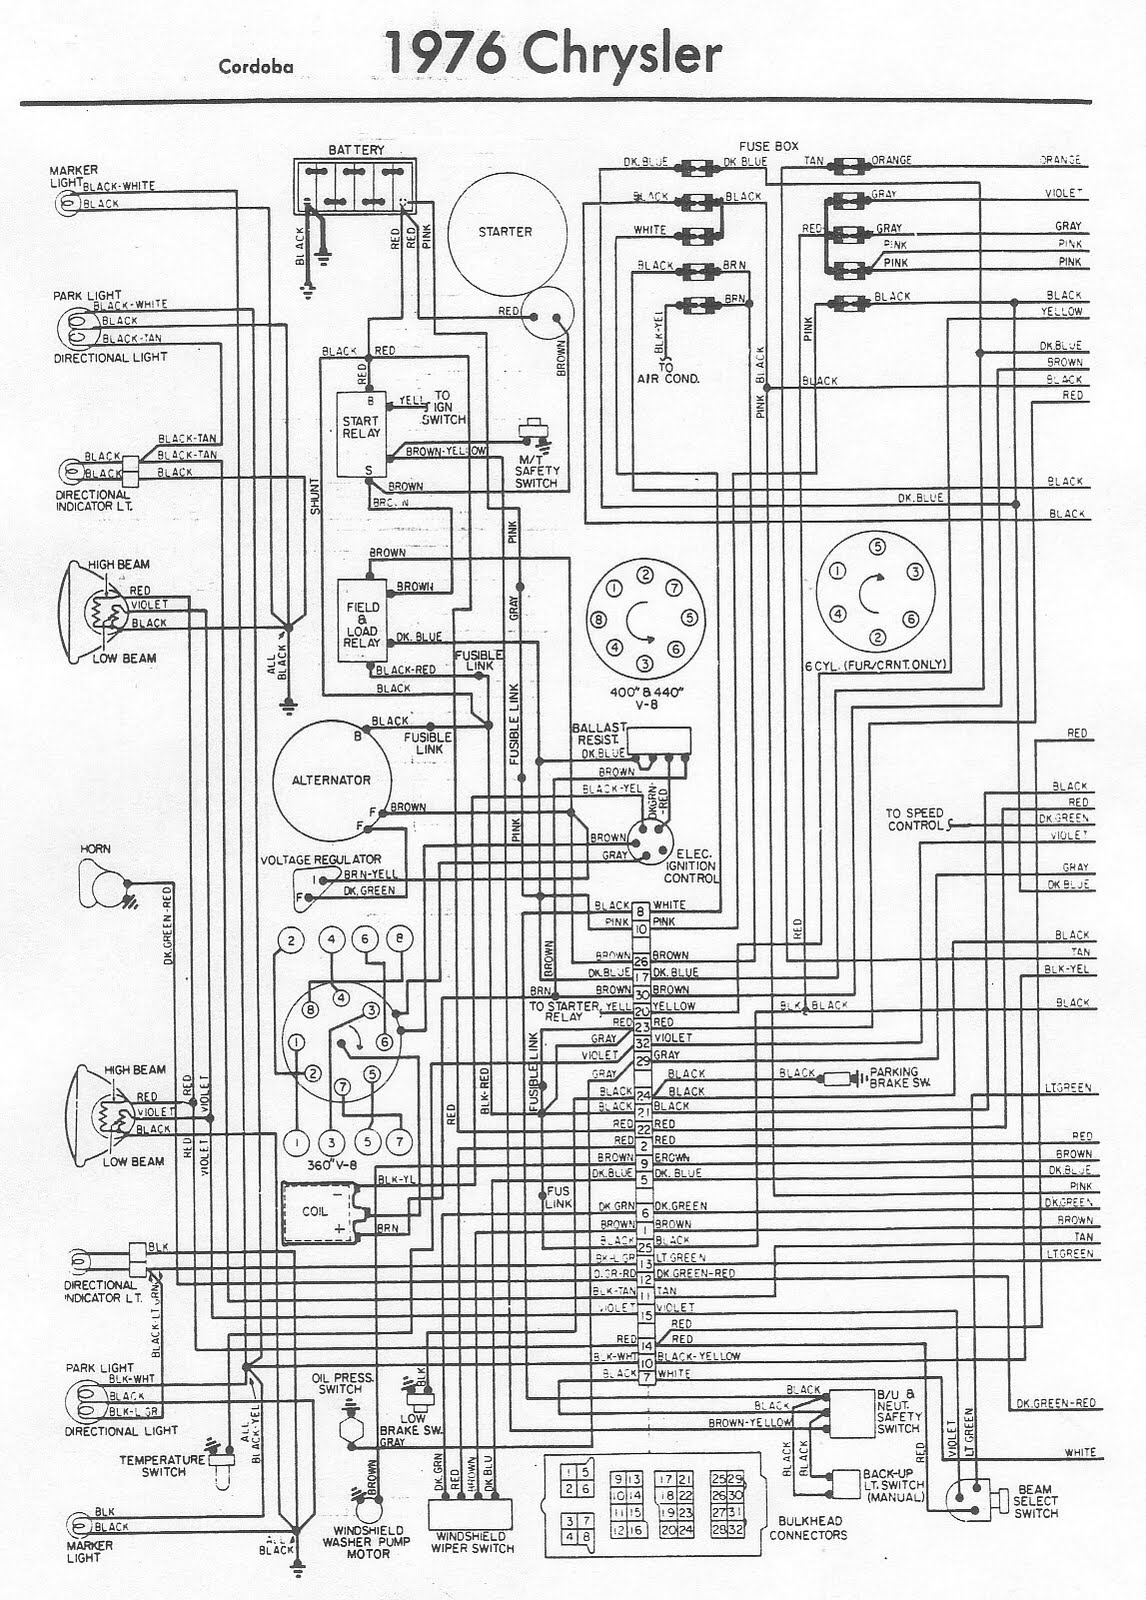 Free Auto Wiring Diagram: 1976 Chrysler Cordoba Engine ...